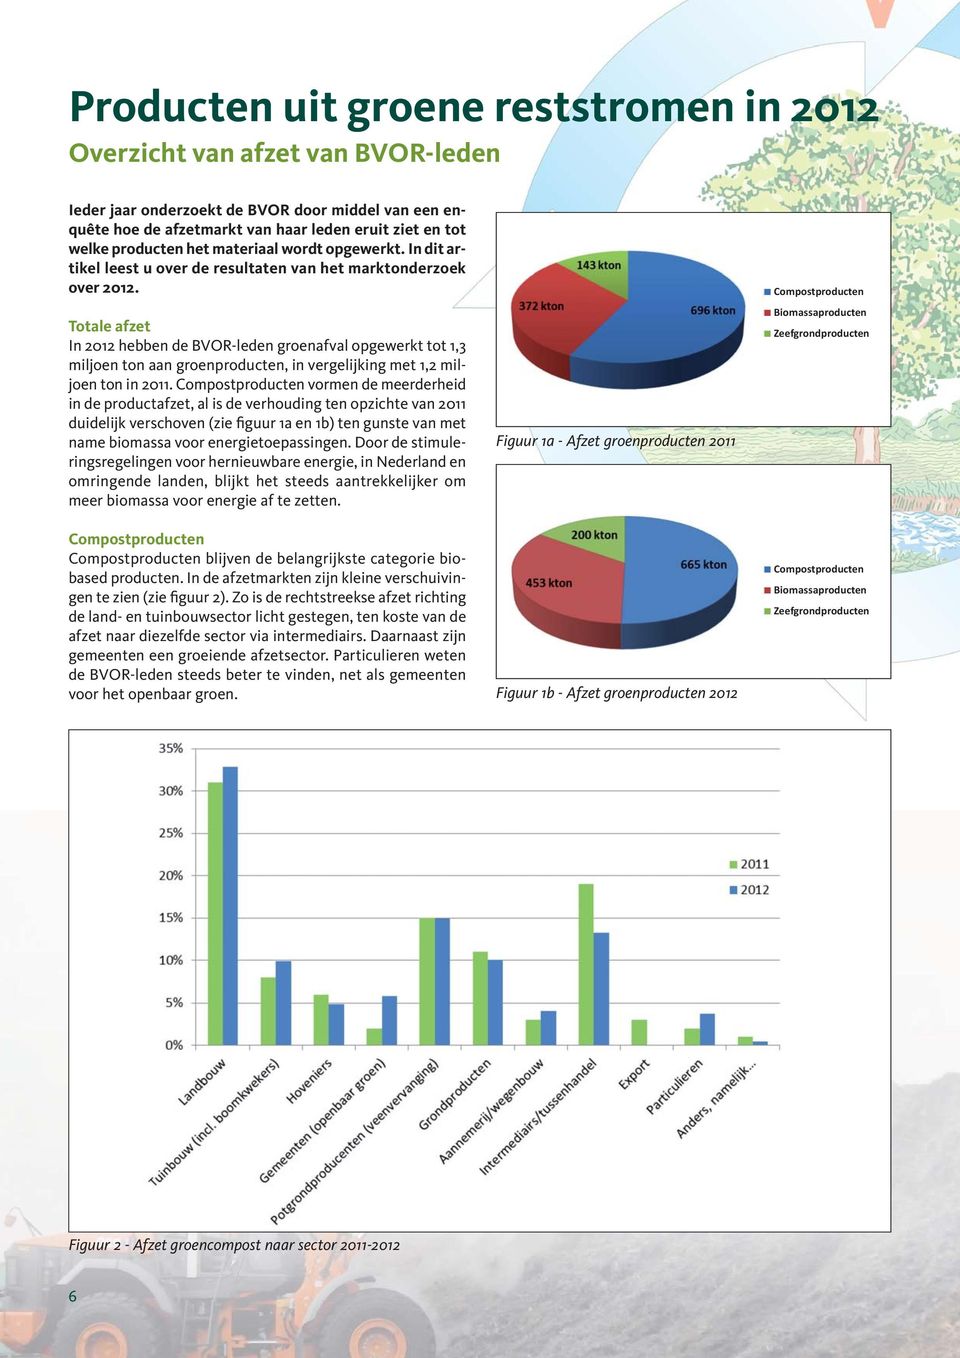 Totale afzet In 2012 hebben de BVOR-leden groenafval opgewerkt tot 1,3 miljoen ton aan groenproducten, in vergelijking met 1,2 miljoen ton in 2011.